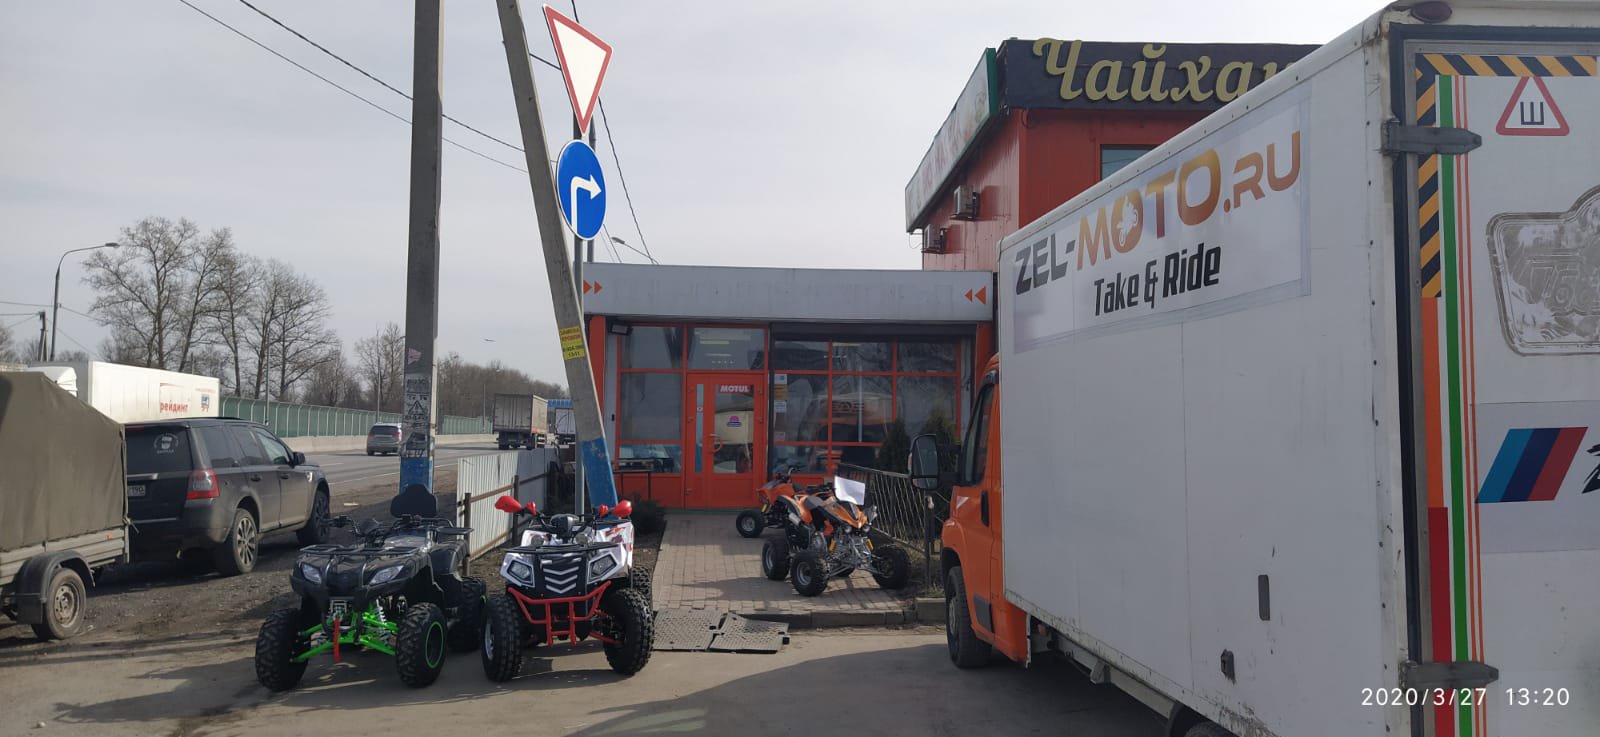 Zel-moto.ru, магазин детских квадроциклов, деревня Чашниково, 53